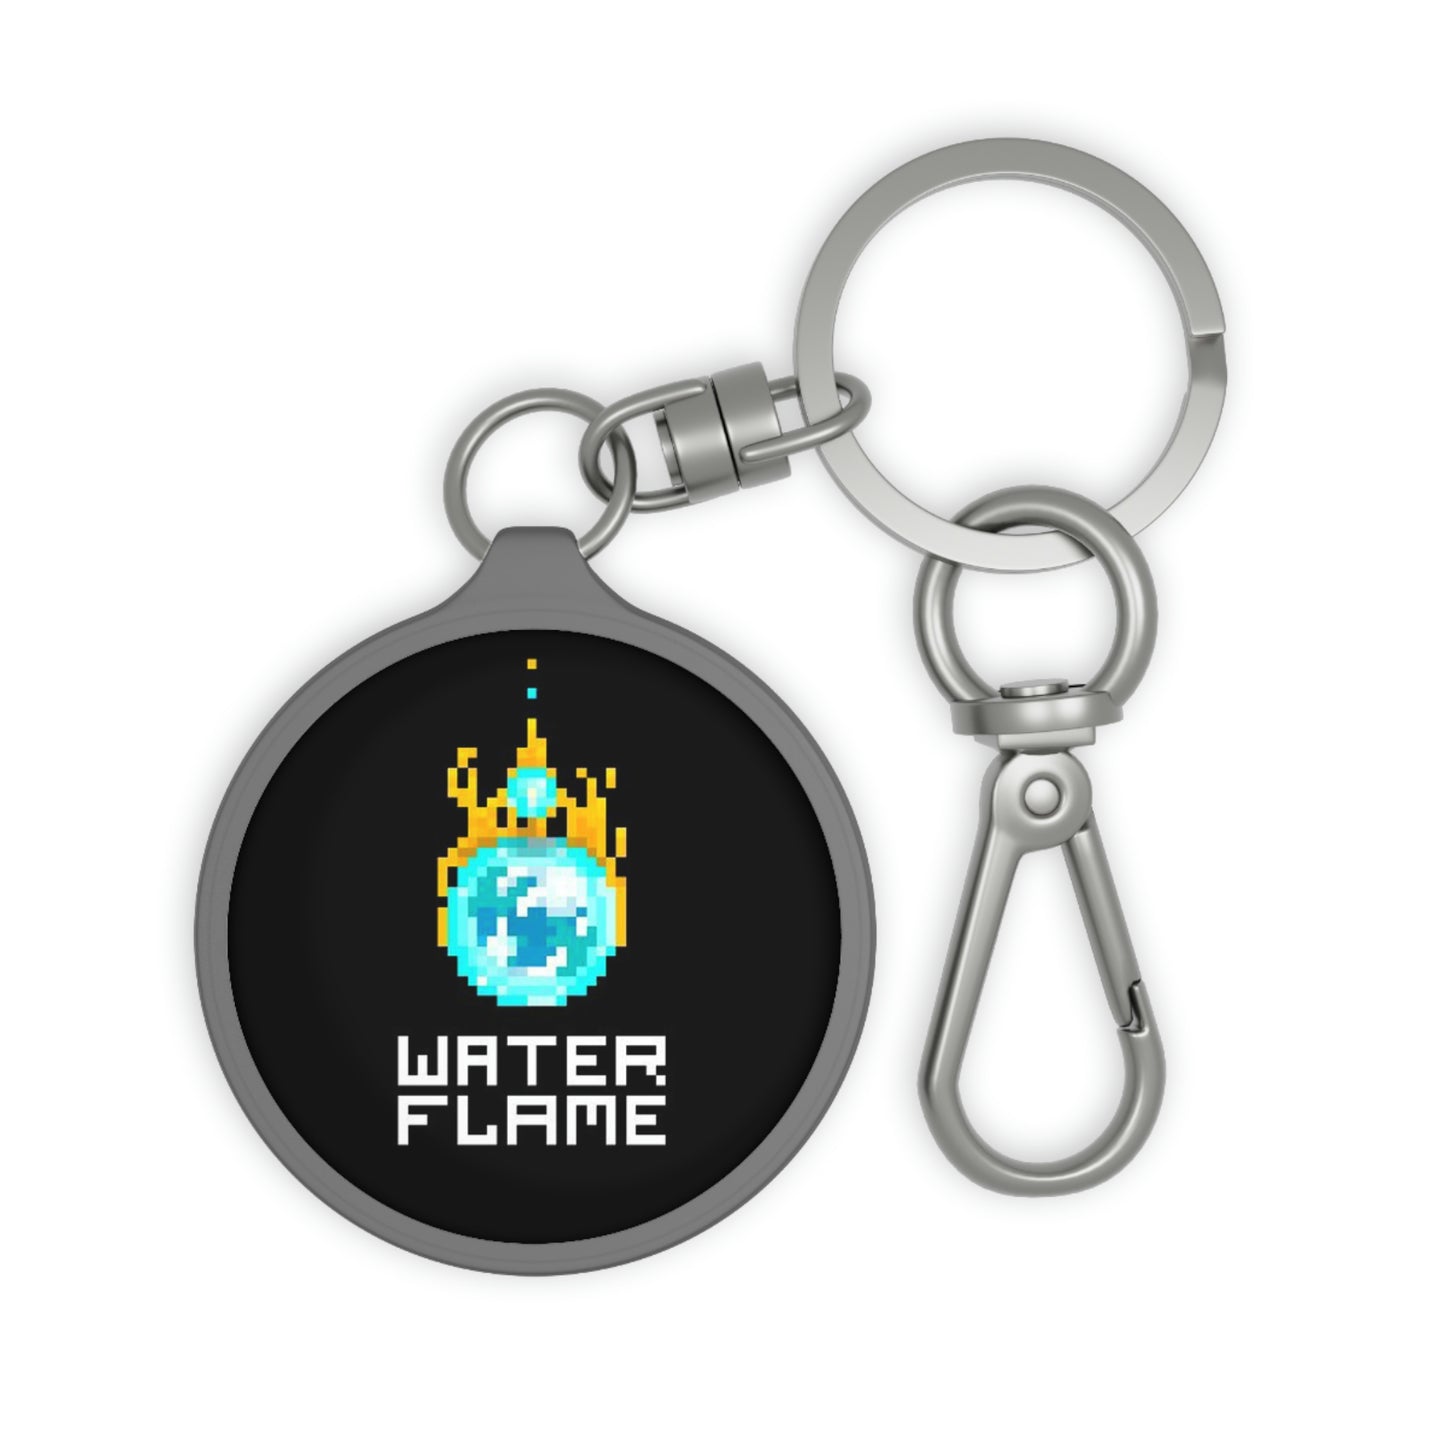 Waterflame Keychain